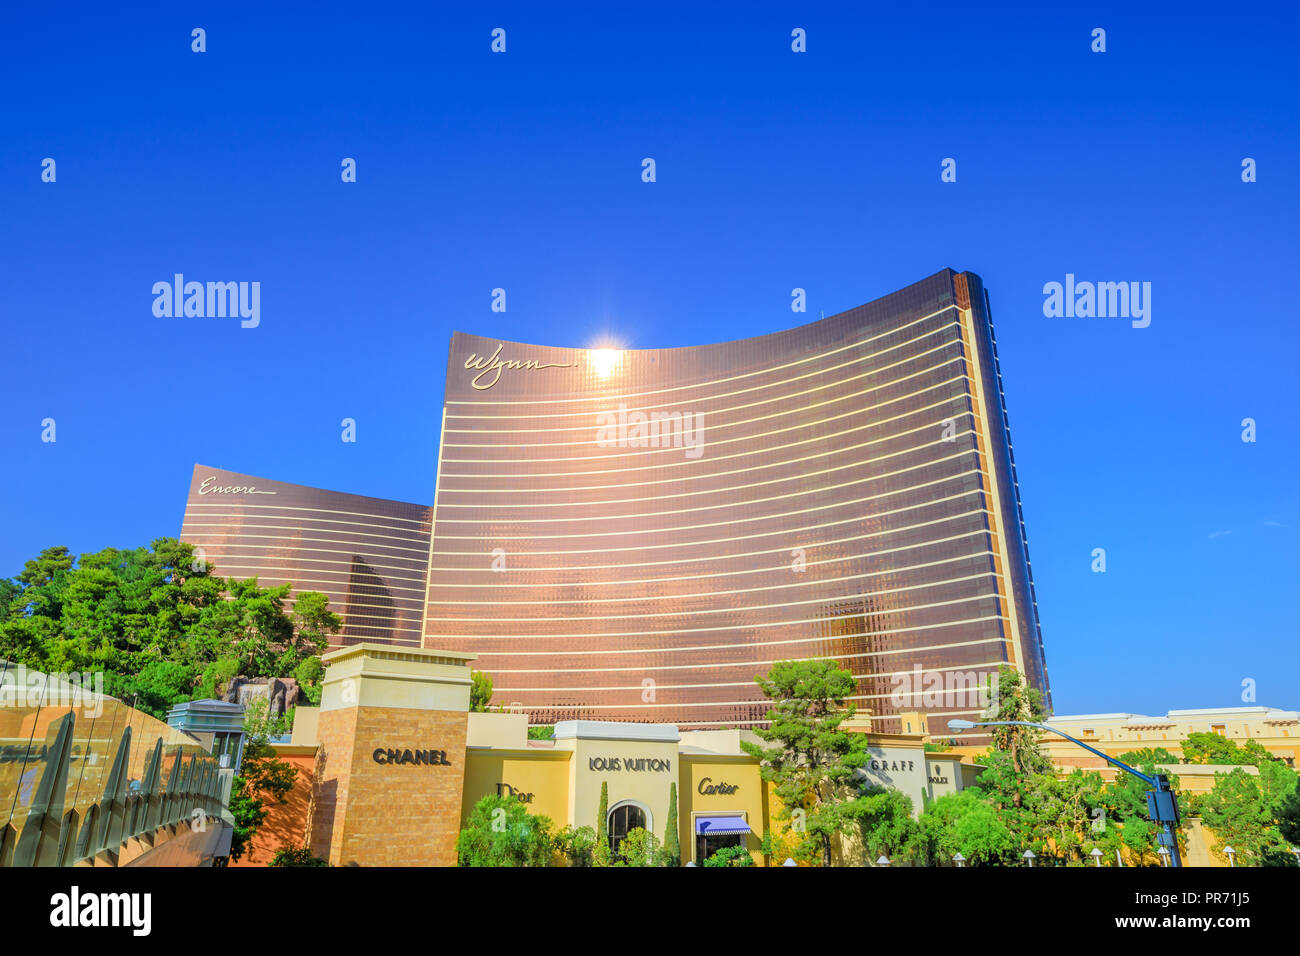 Las Vegas, Nevada, Estados Unidos - 18 de agosto de 2018: Vista aérea de la torre Wynn y Encore Resort 5 estrellas Hotel Casino en Las Vegas Strip y lujosas tiendas de marcas famosas. Día soleado, cielo azul. Foto de stock